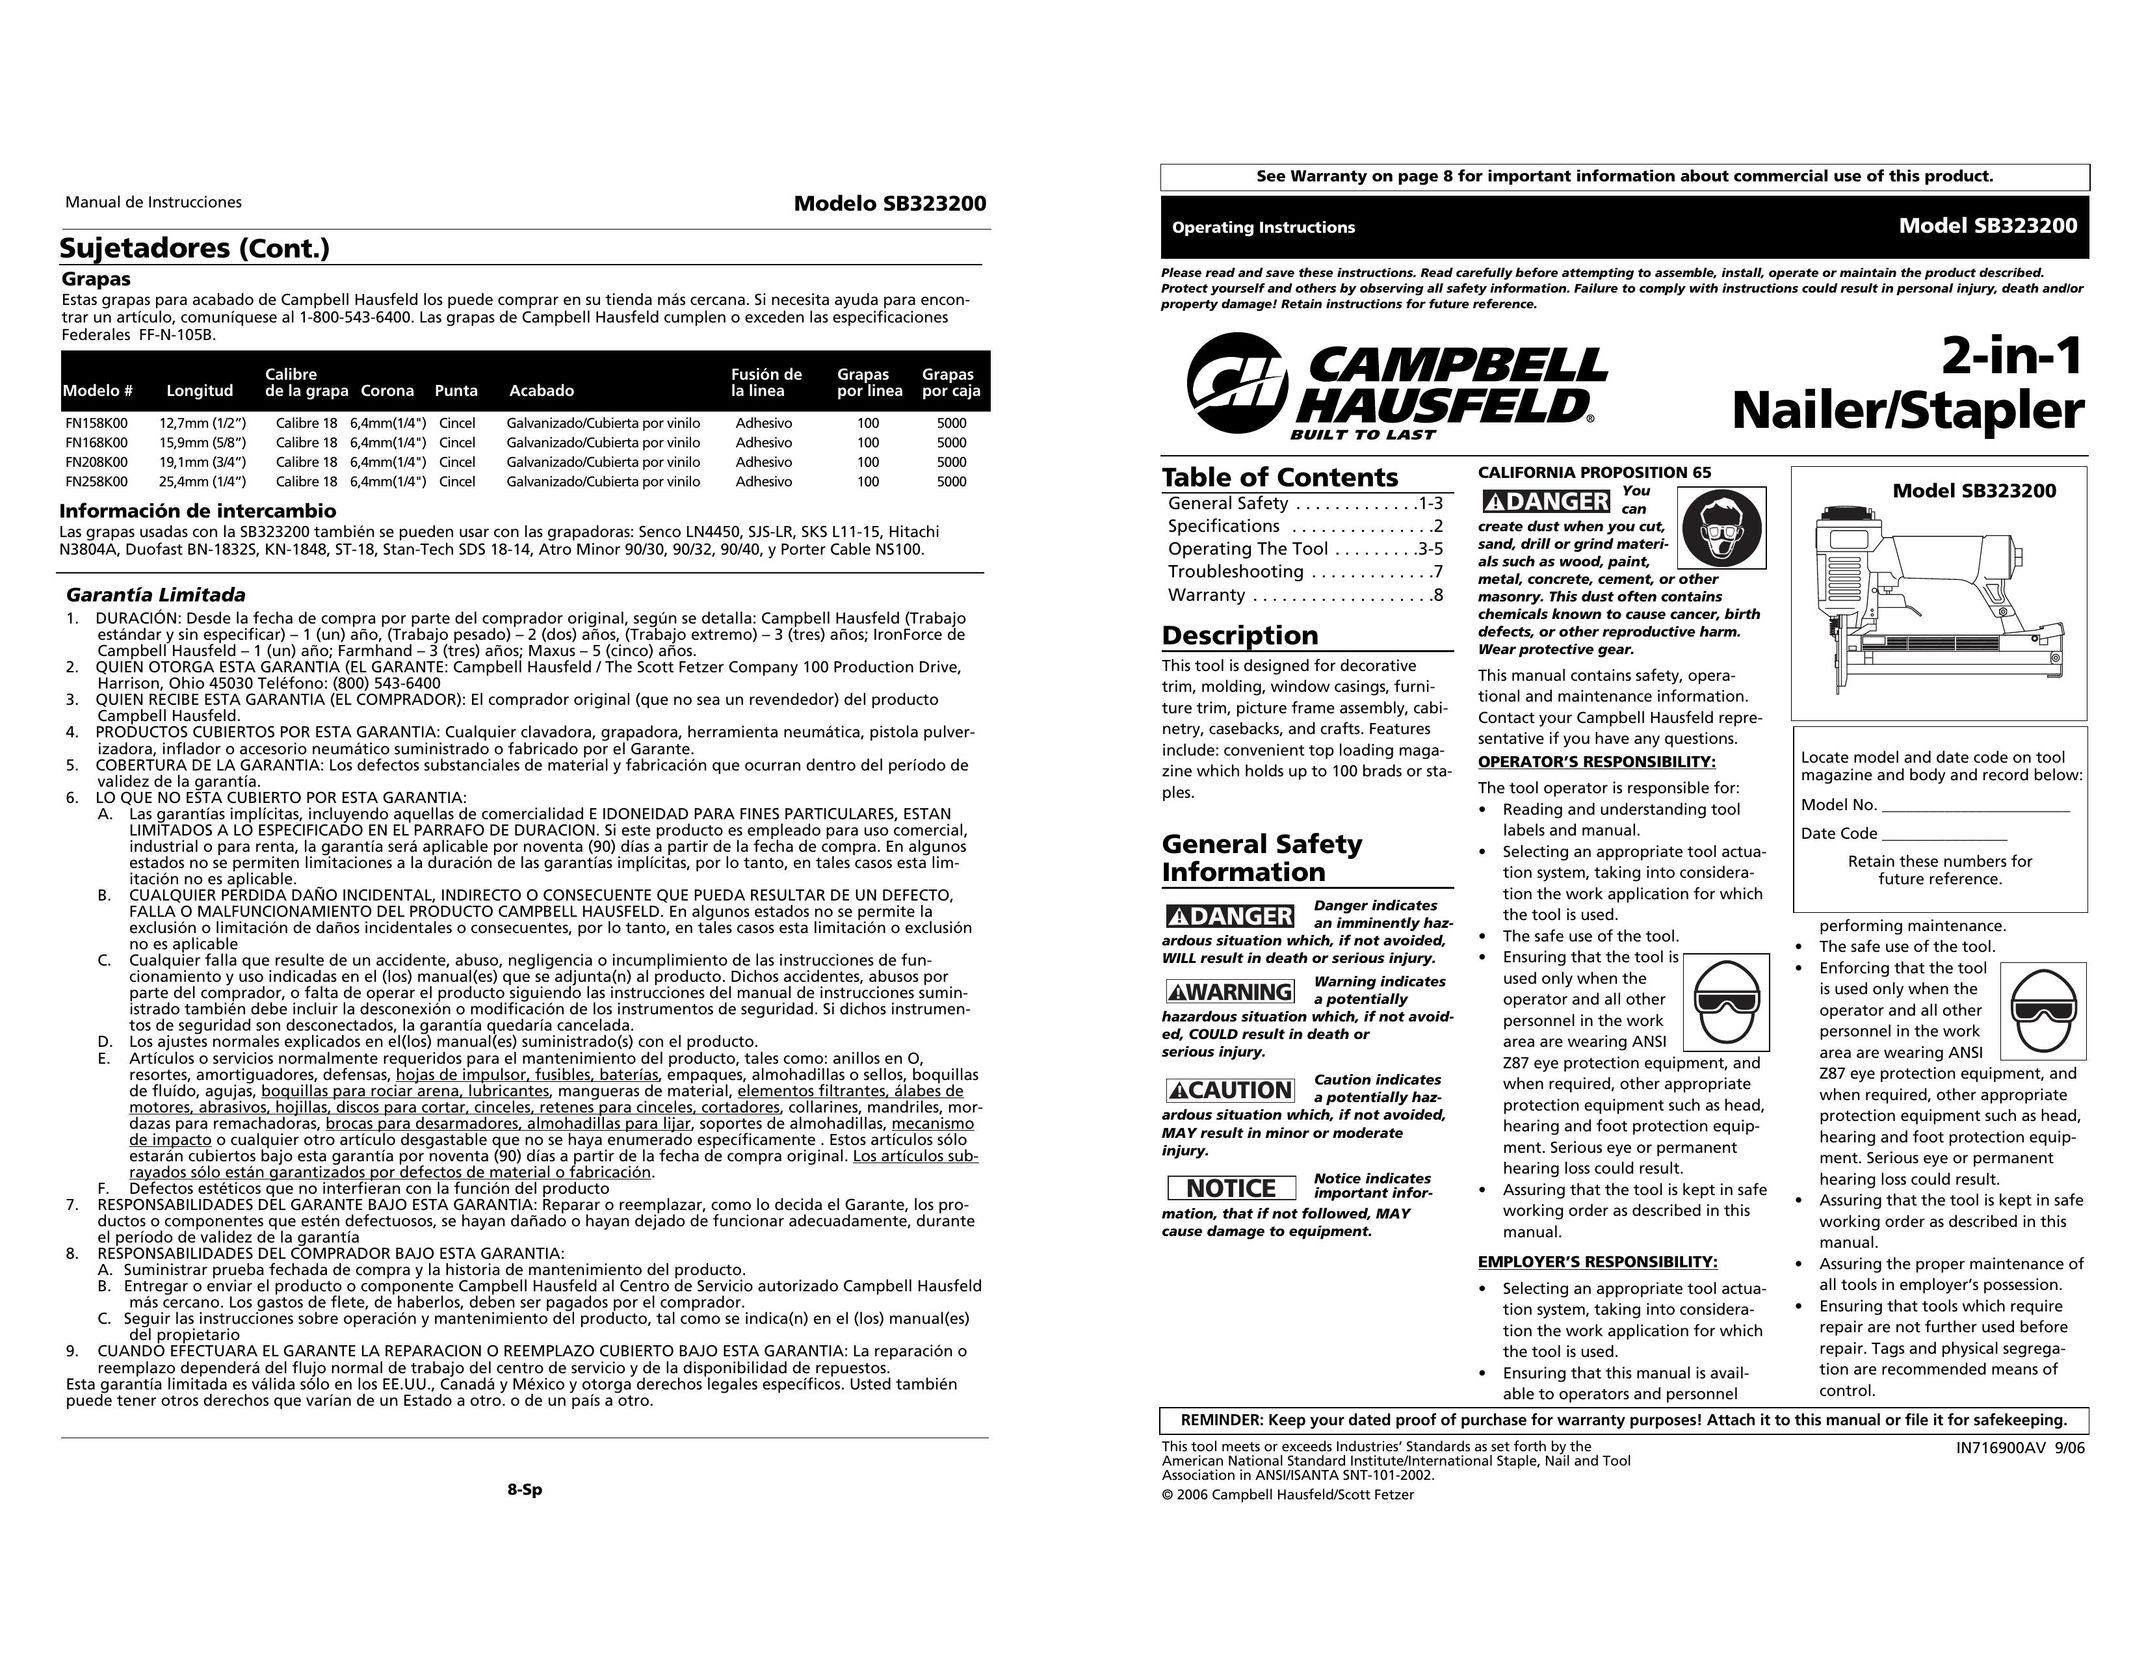 Campbell Hausfeld SB323200 Staple Gun User Manual